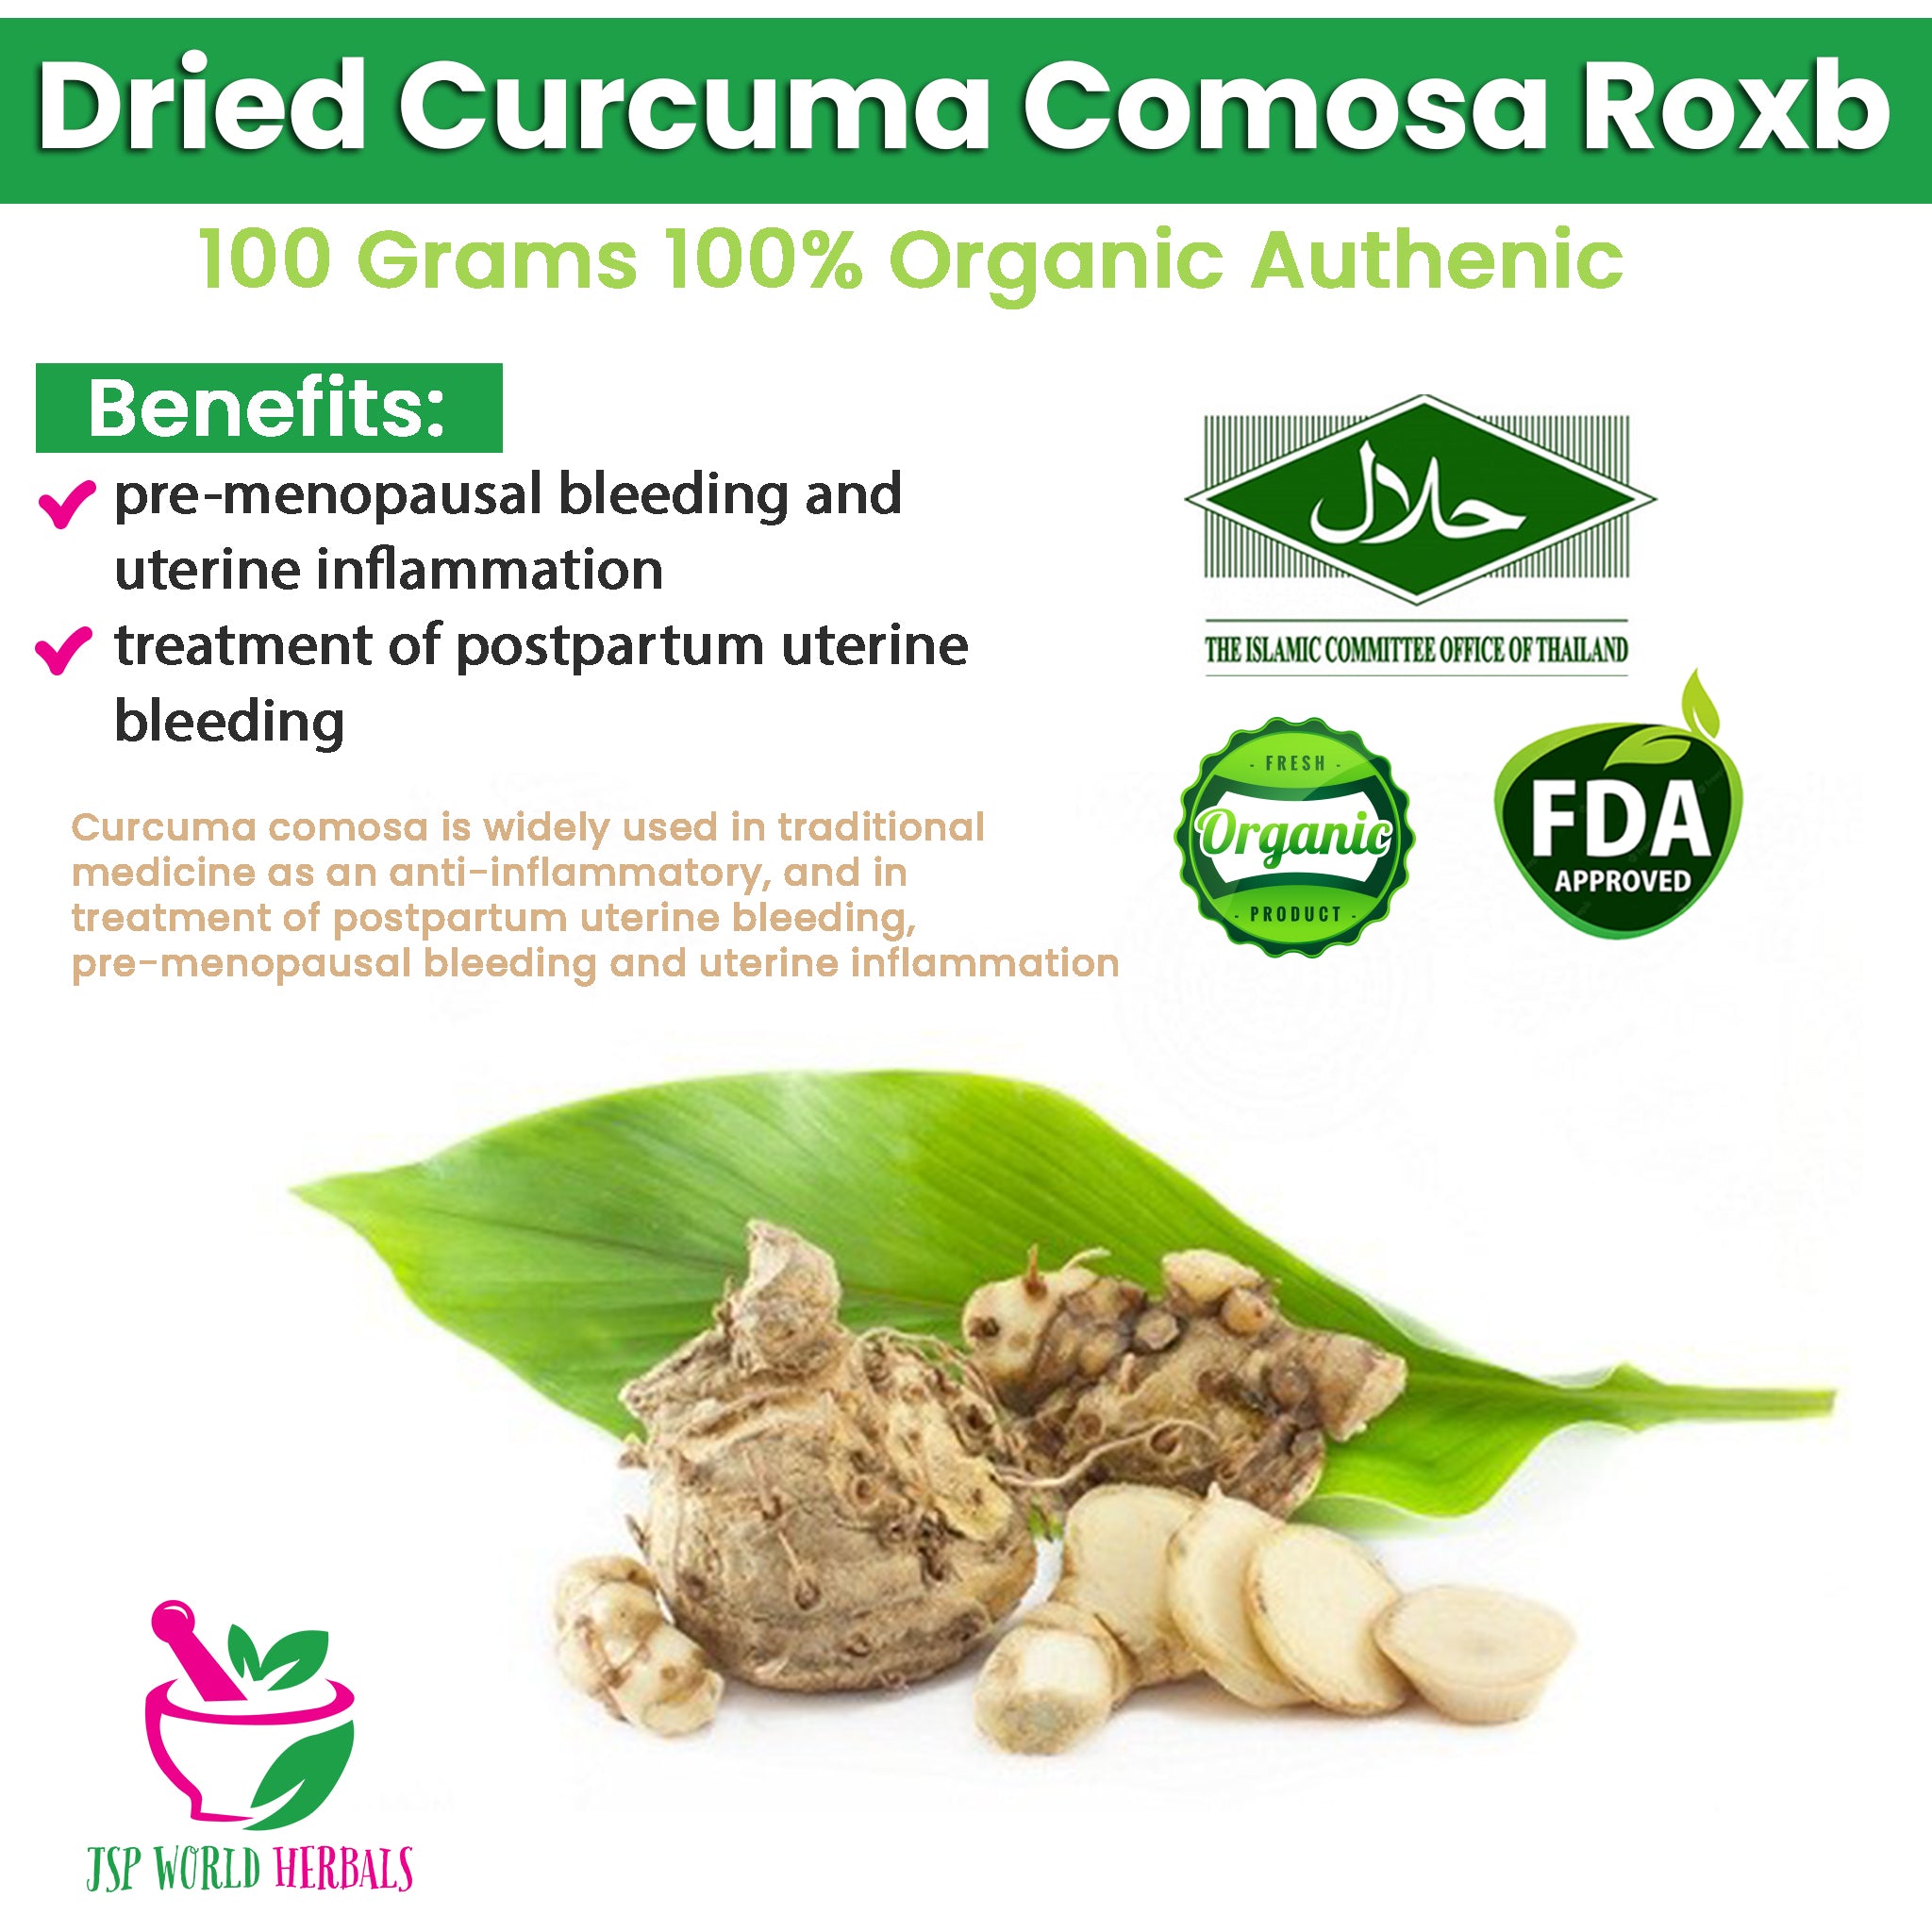 Dried Curcuma comosa Roxb